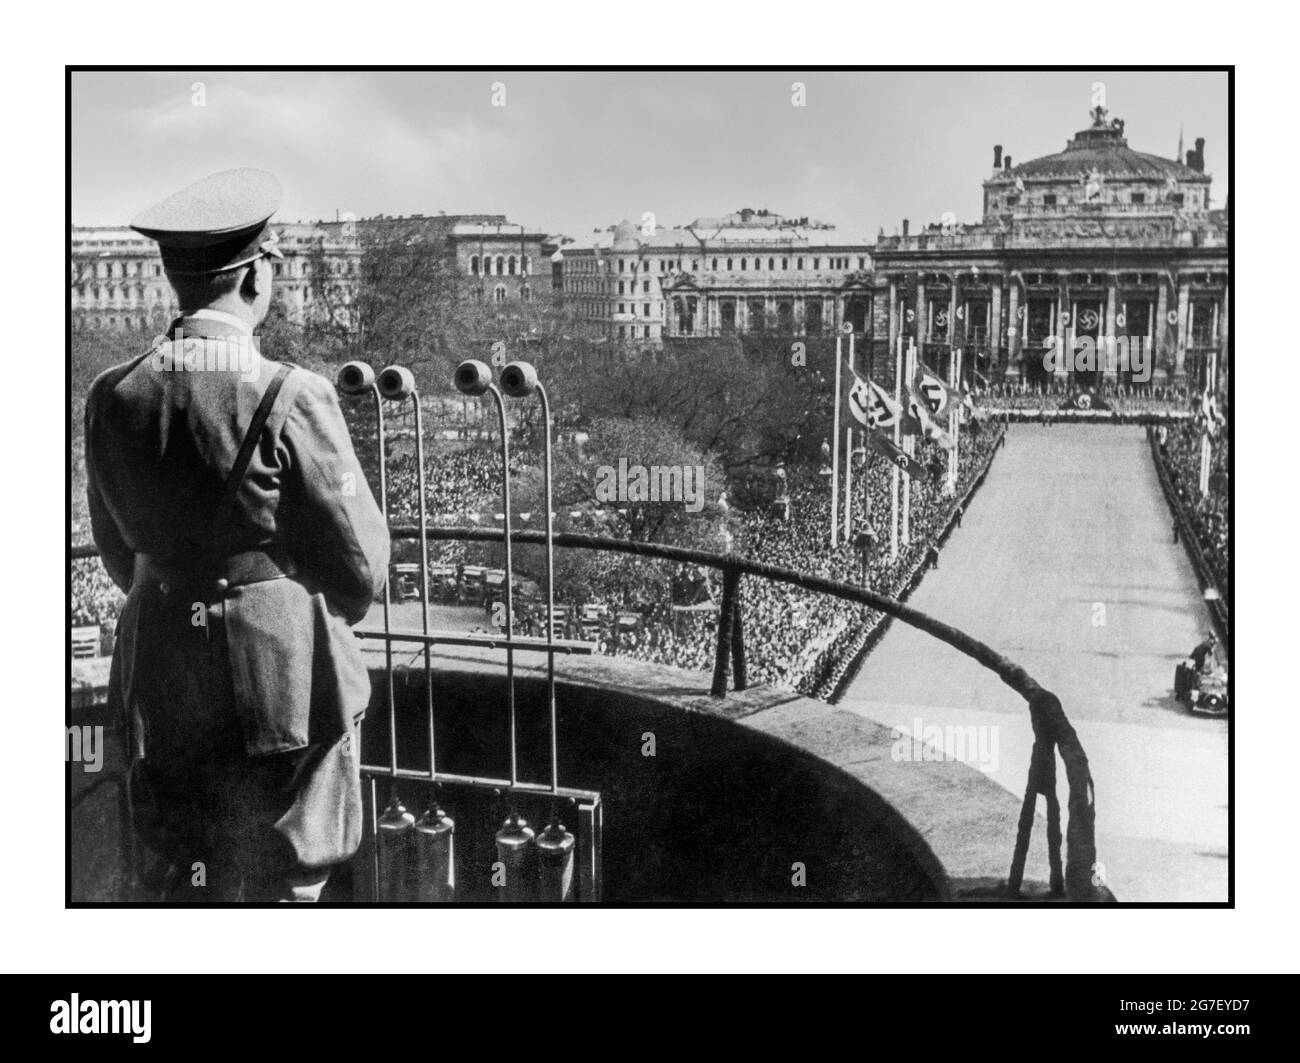 ADOLF HITLER MIKROPHIERT WIEN ÖSTERREICH NACH ANSCHLUSS 15 1938. MÄRZ Adolf Hitler spricht in Uniform vom Balkon des Wiener Rathauses aus mit Hilfe von Rundfunkmikrofonen am 15. März 1938 in Wien, Österreich, an die Wiener. Der Anschluss Annexion fand am 12. März 1938 statt Stockfoto